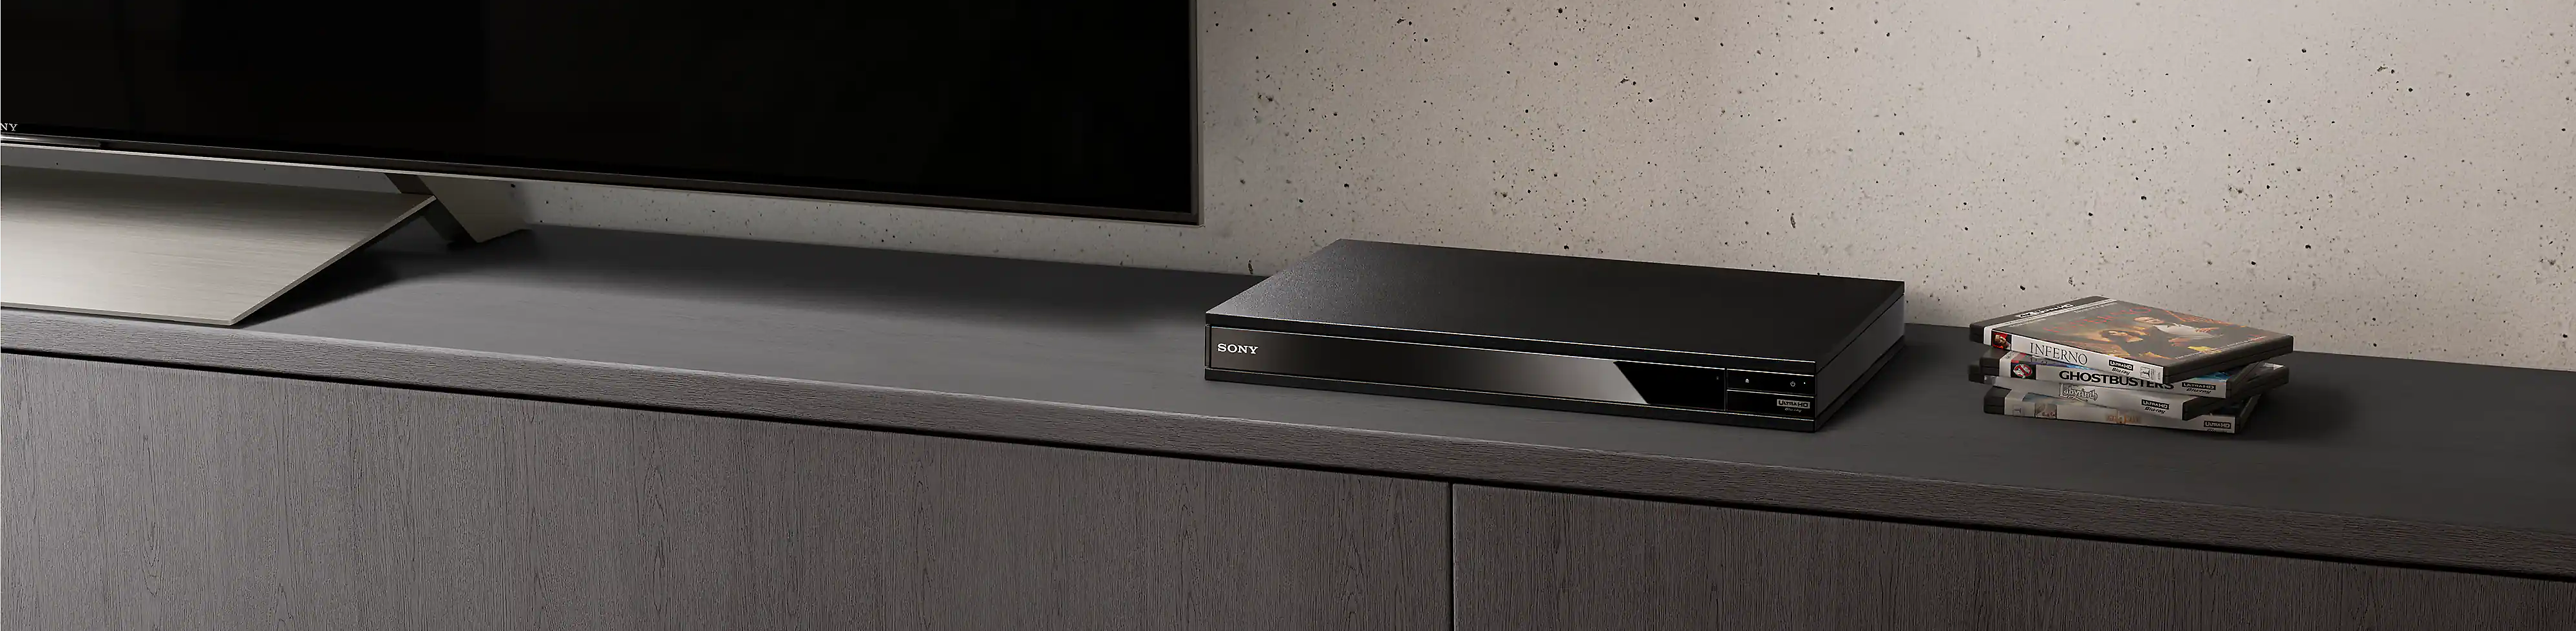 يظهر مشغل Blu-ray Disc™‎ باللون الأسود بين كومة من أقراص Blu-ray وجهاز تلفزيون باللون الأسود..